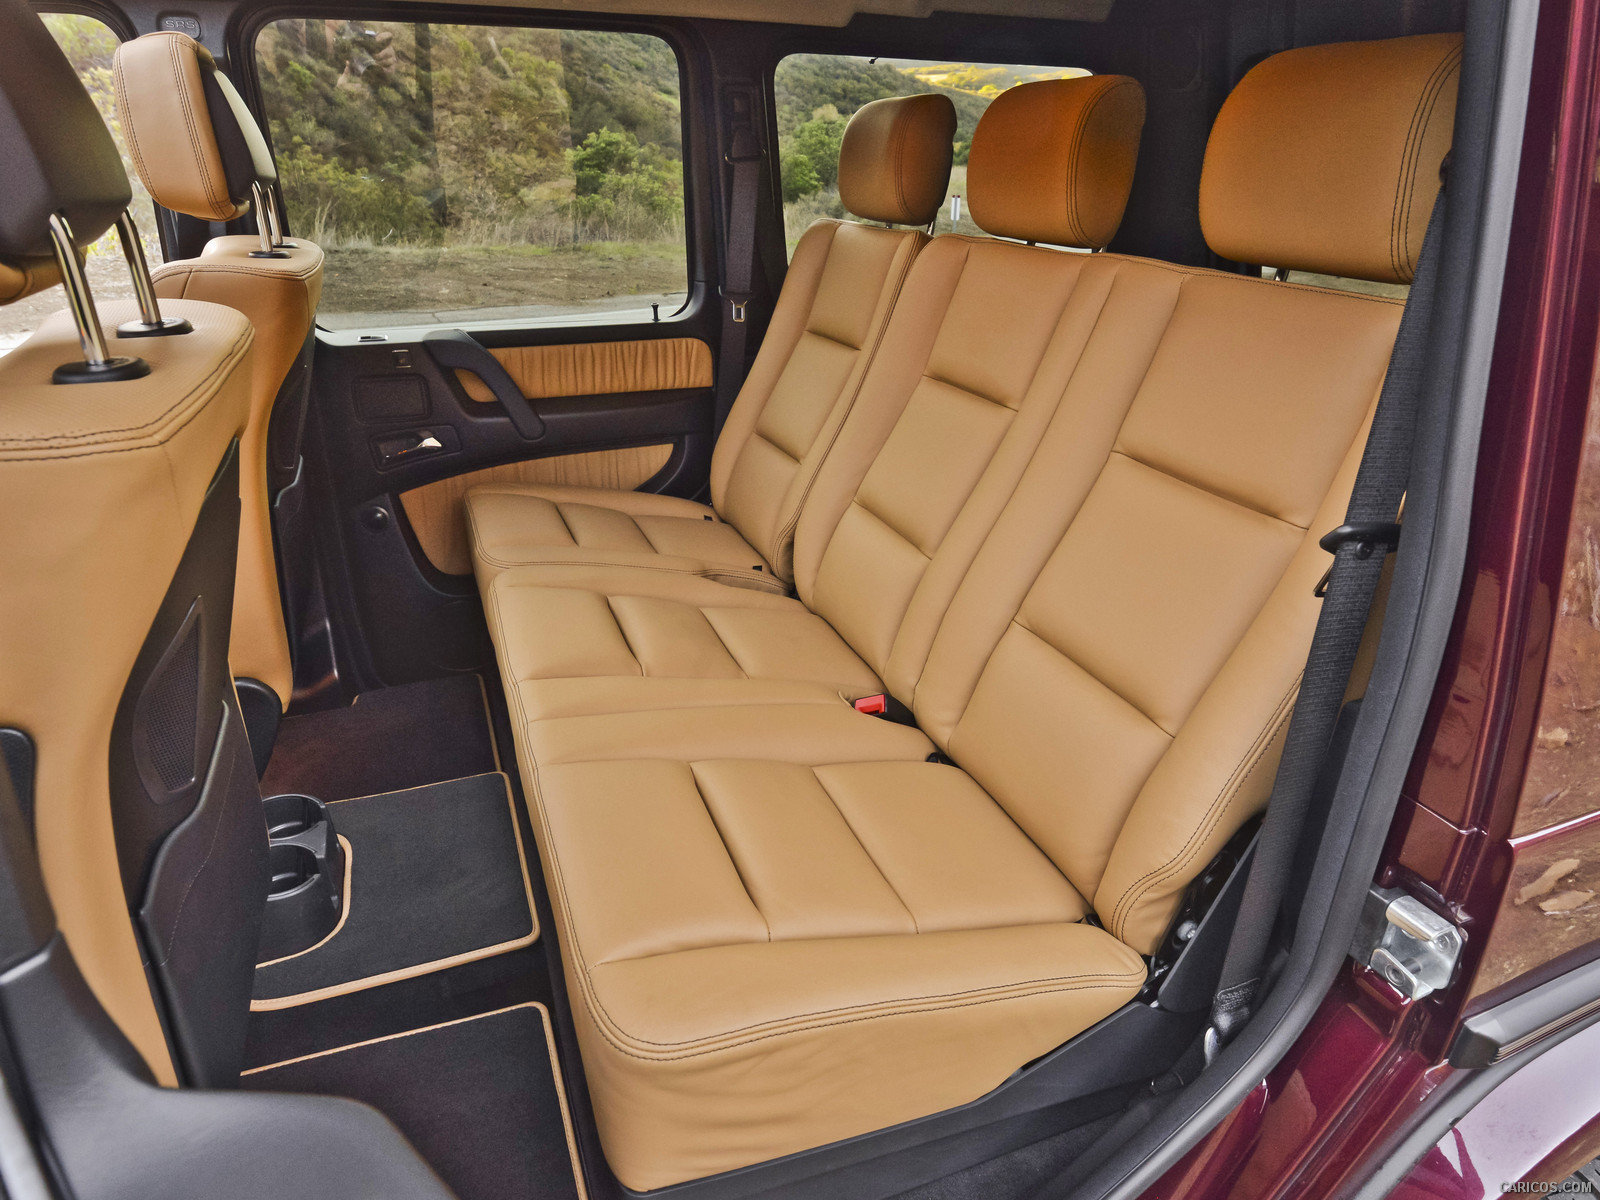 2013 Mercedes Benz G550 Interior Rear Seats Hd Wallpaper 69